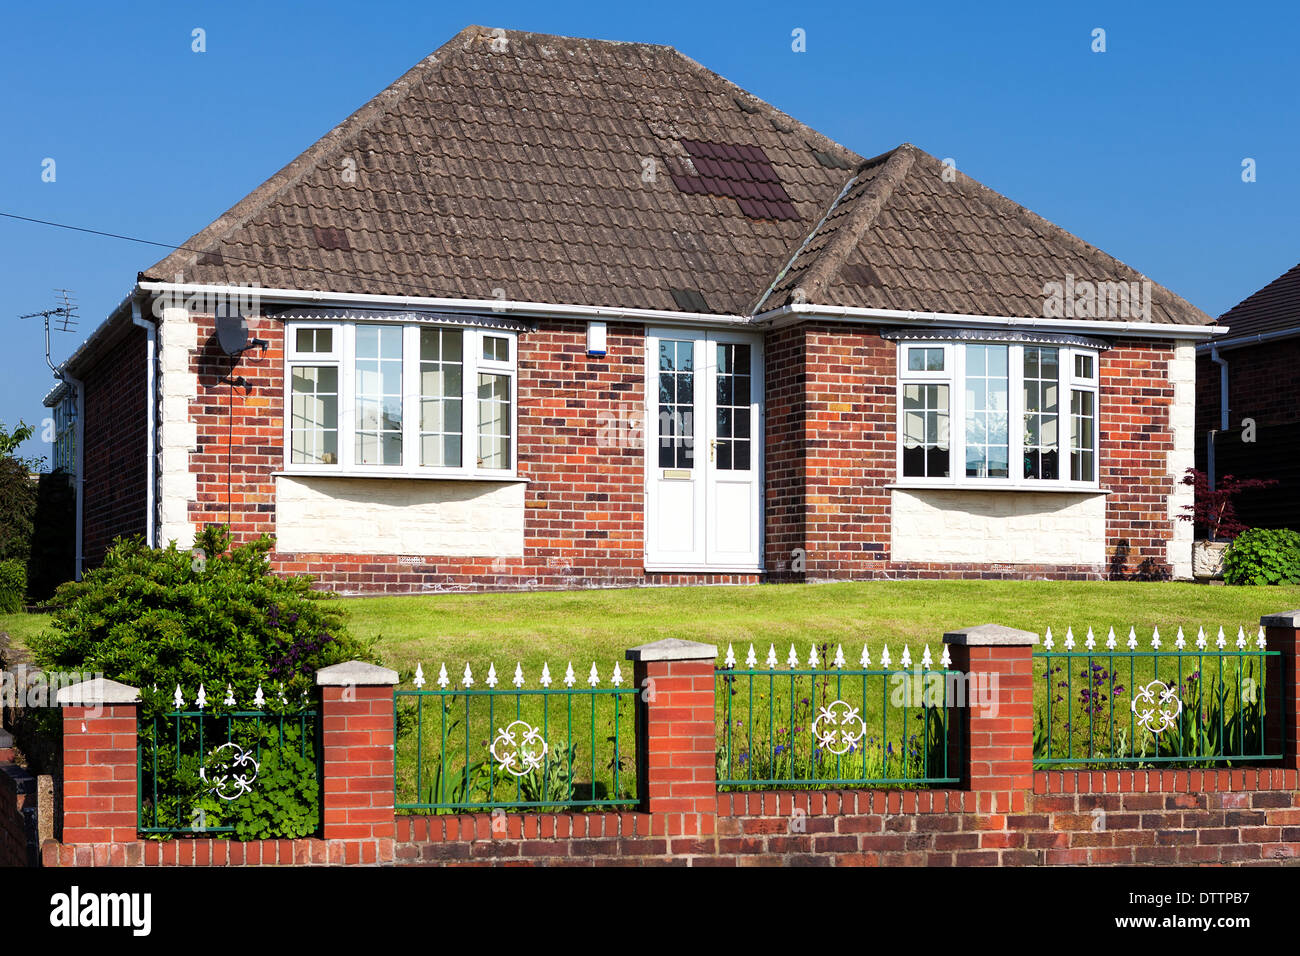 Typisch englisches Haus mit Garten Stockfoto